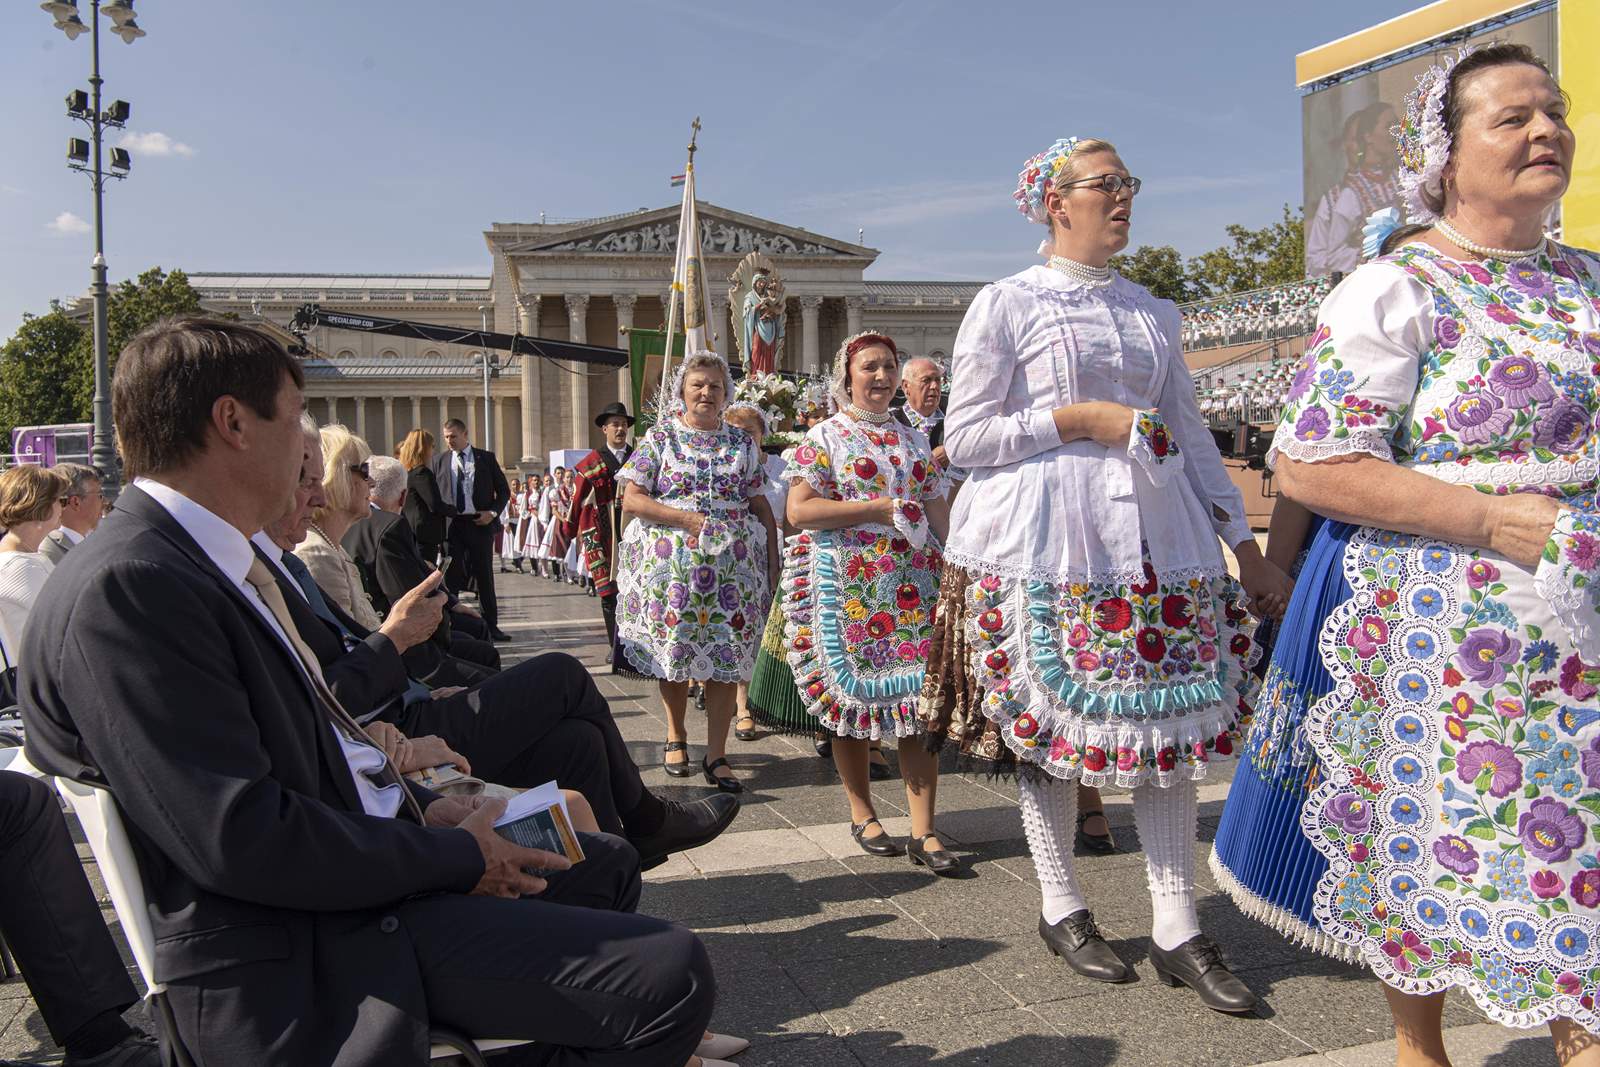 Al 52-lea Congres Euharistic Internațional se deschide la Budapesta